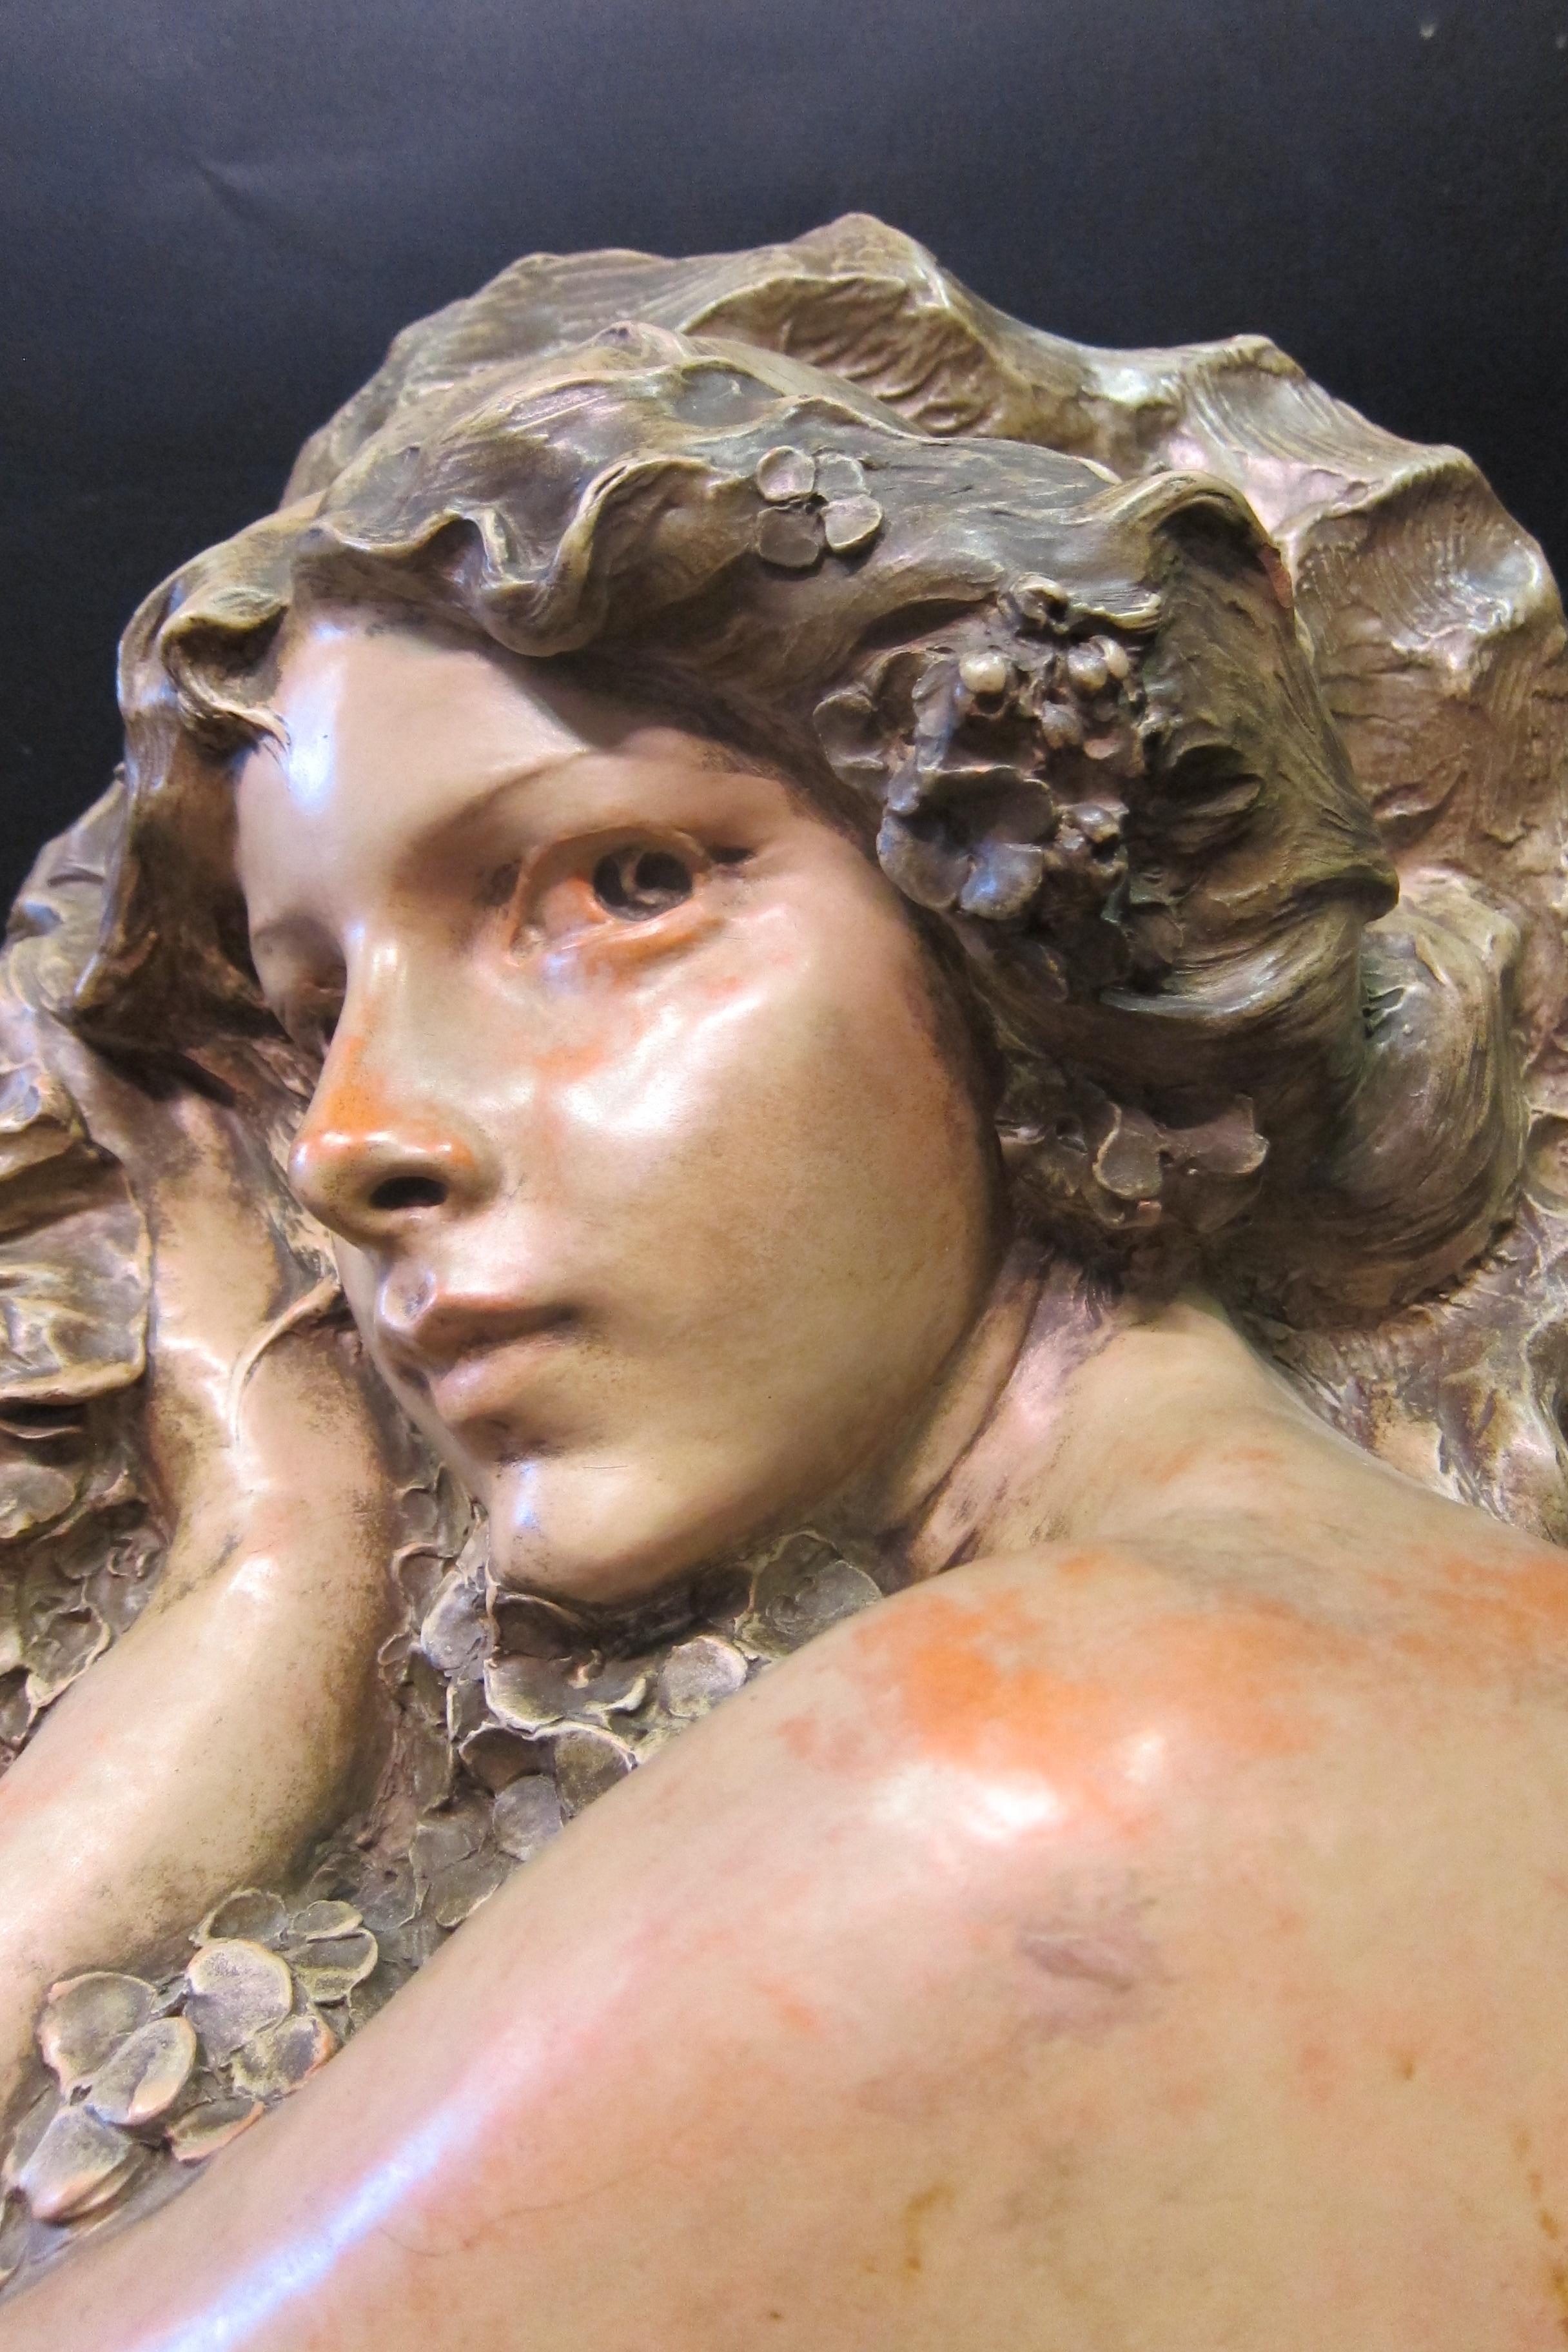 Diese figurale Skulptur im Jugendstil ist in Terrakotta ausgeführt. Es zeigt eine schöne junge Frau mit ausdrucksstarken Augen, die Blumenblüten umarmt. Das Werk ist signiert 